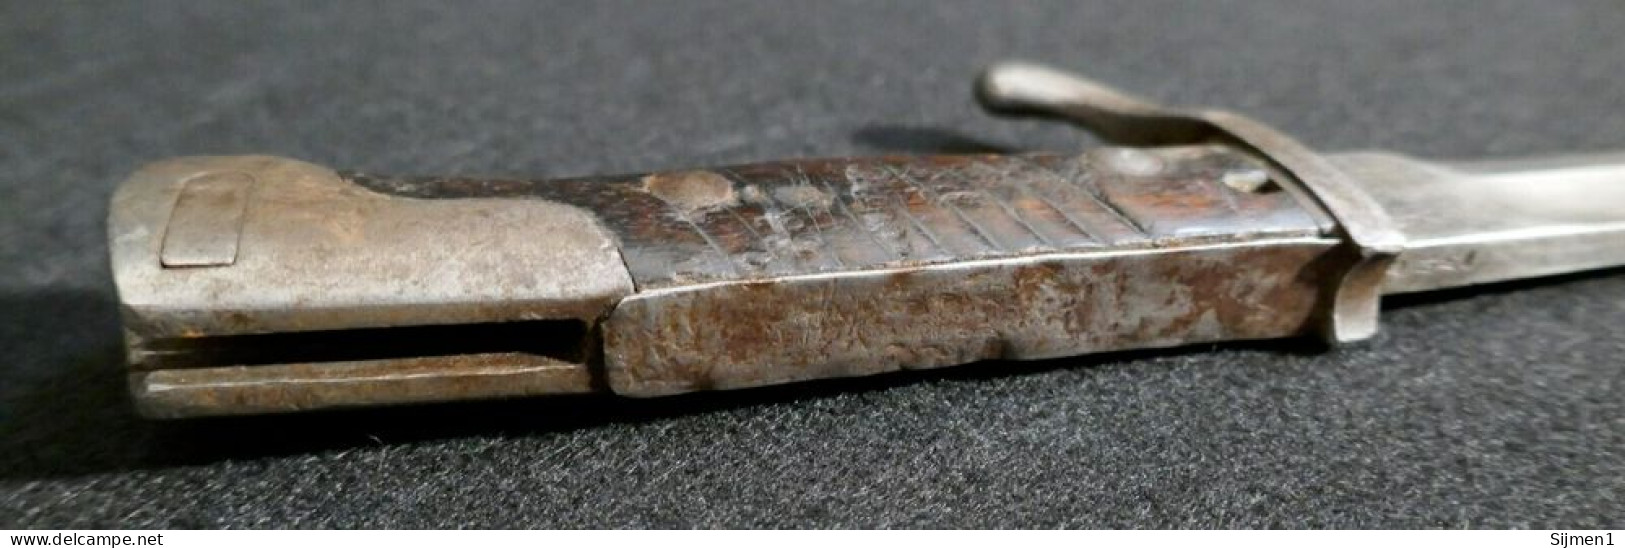 Lame de boucher impériale allemande de la Première Guerre mondiale, baïonnette 'Mauser', couteau de tranchée coupé 1917